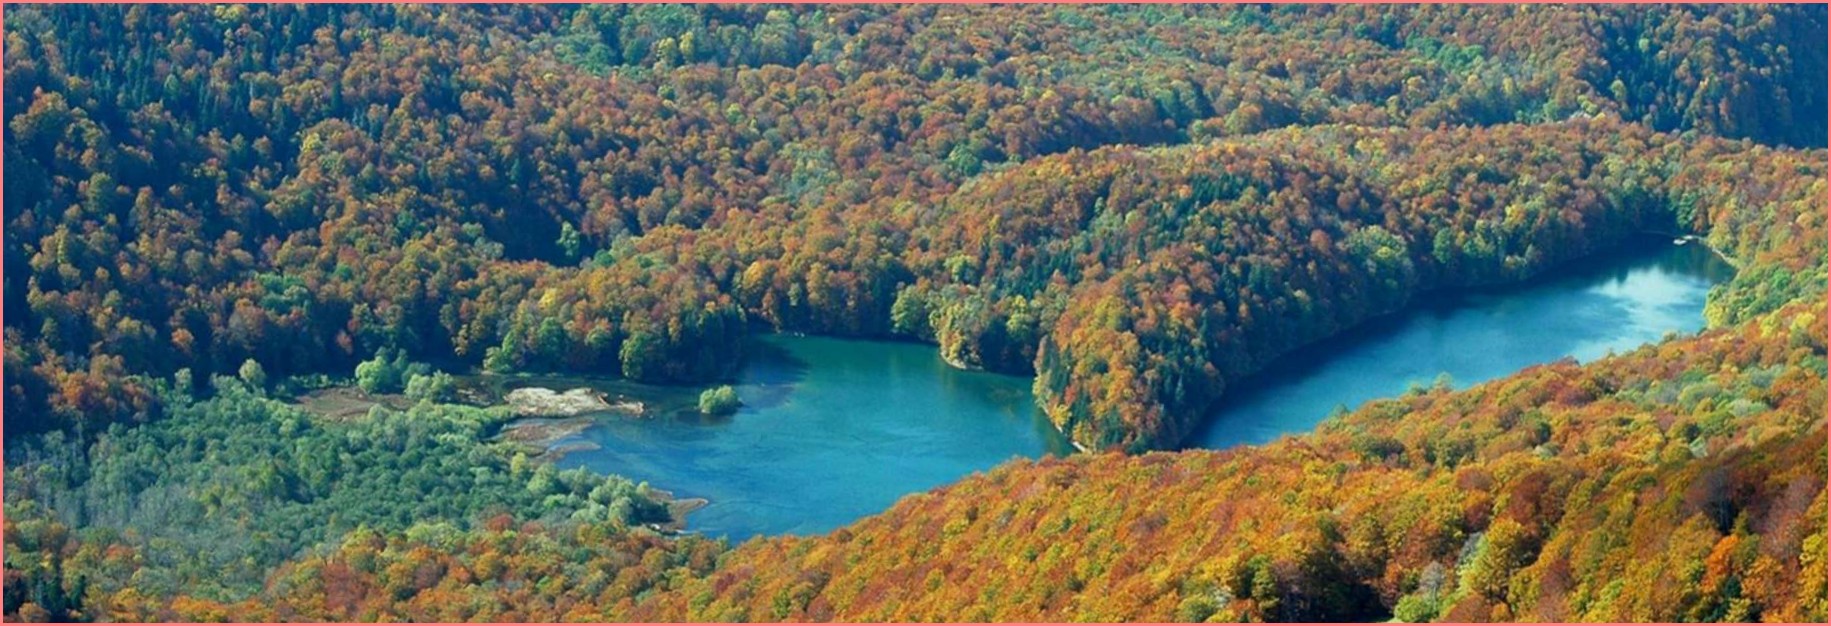 Национальный парк 'Биоградска гора' большое из которых - Биоградское